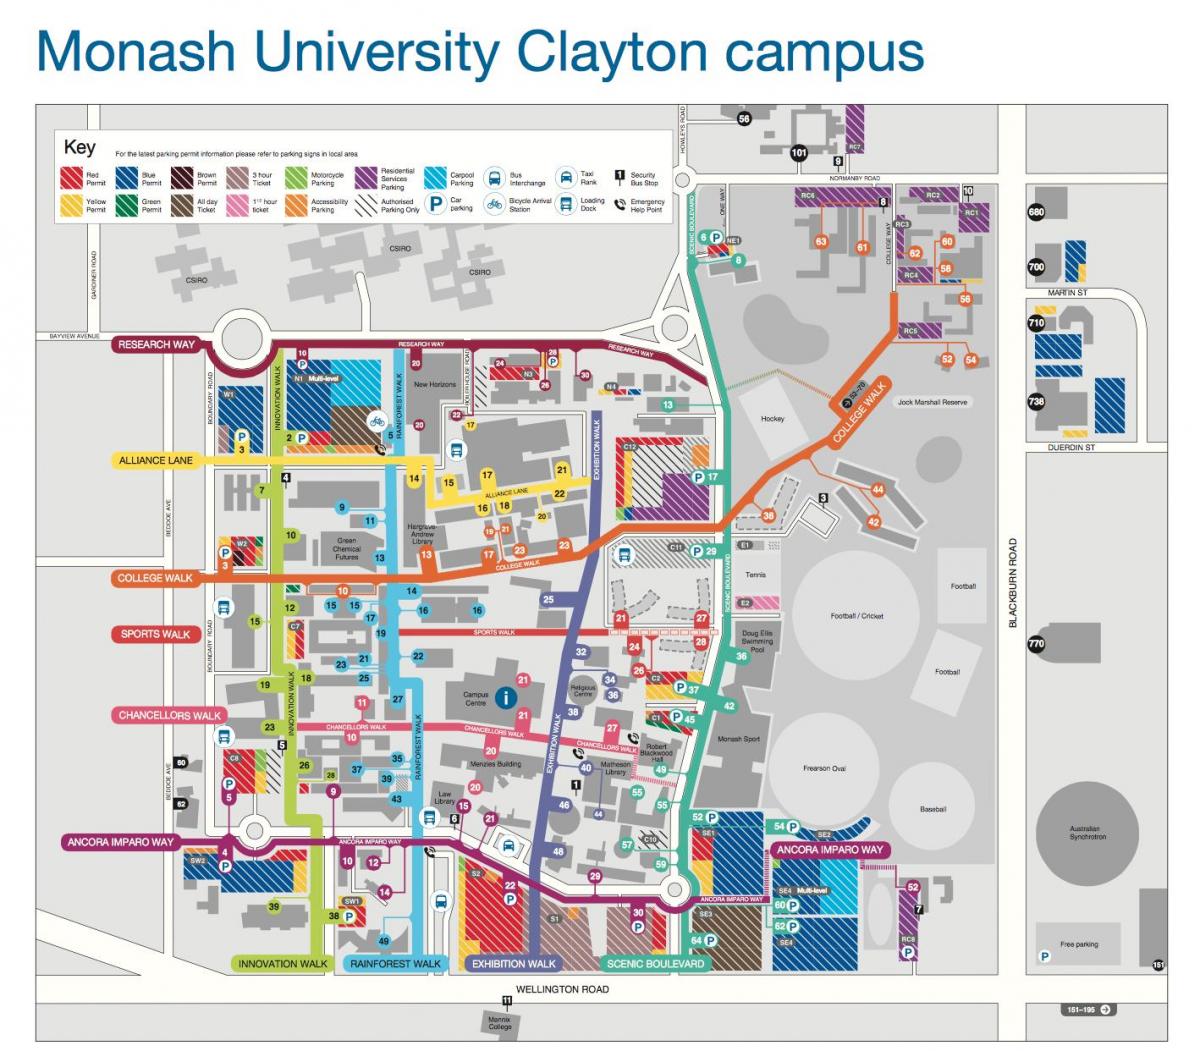 Monash их сургууль Clayton газрын зураг